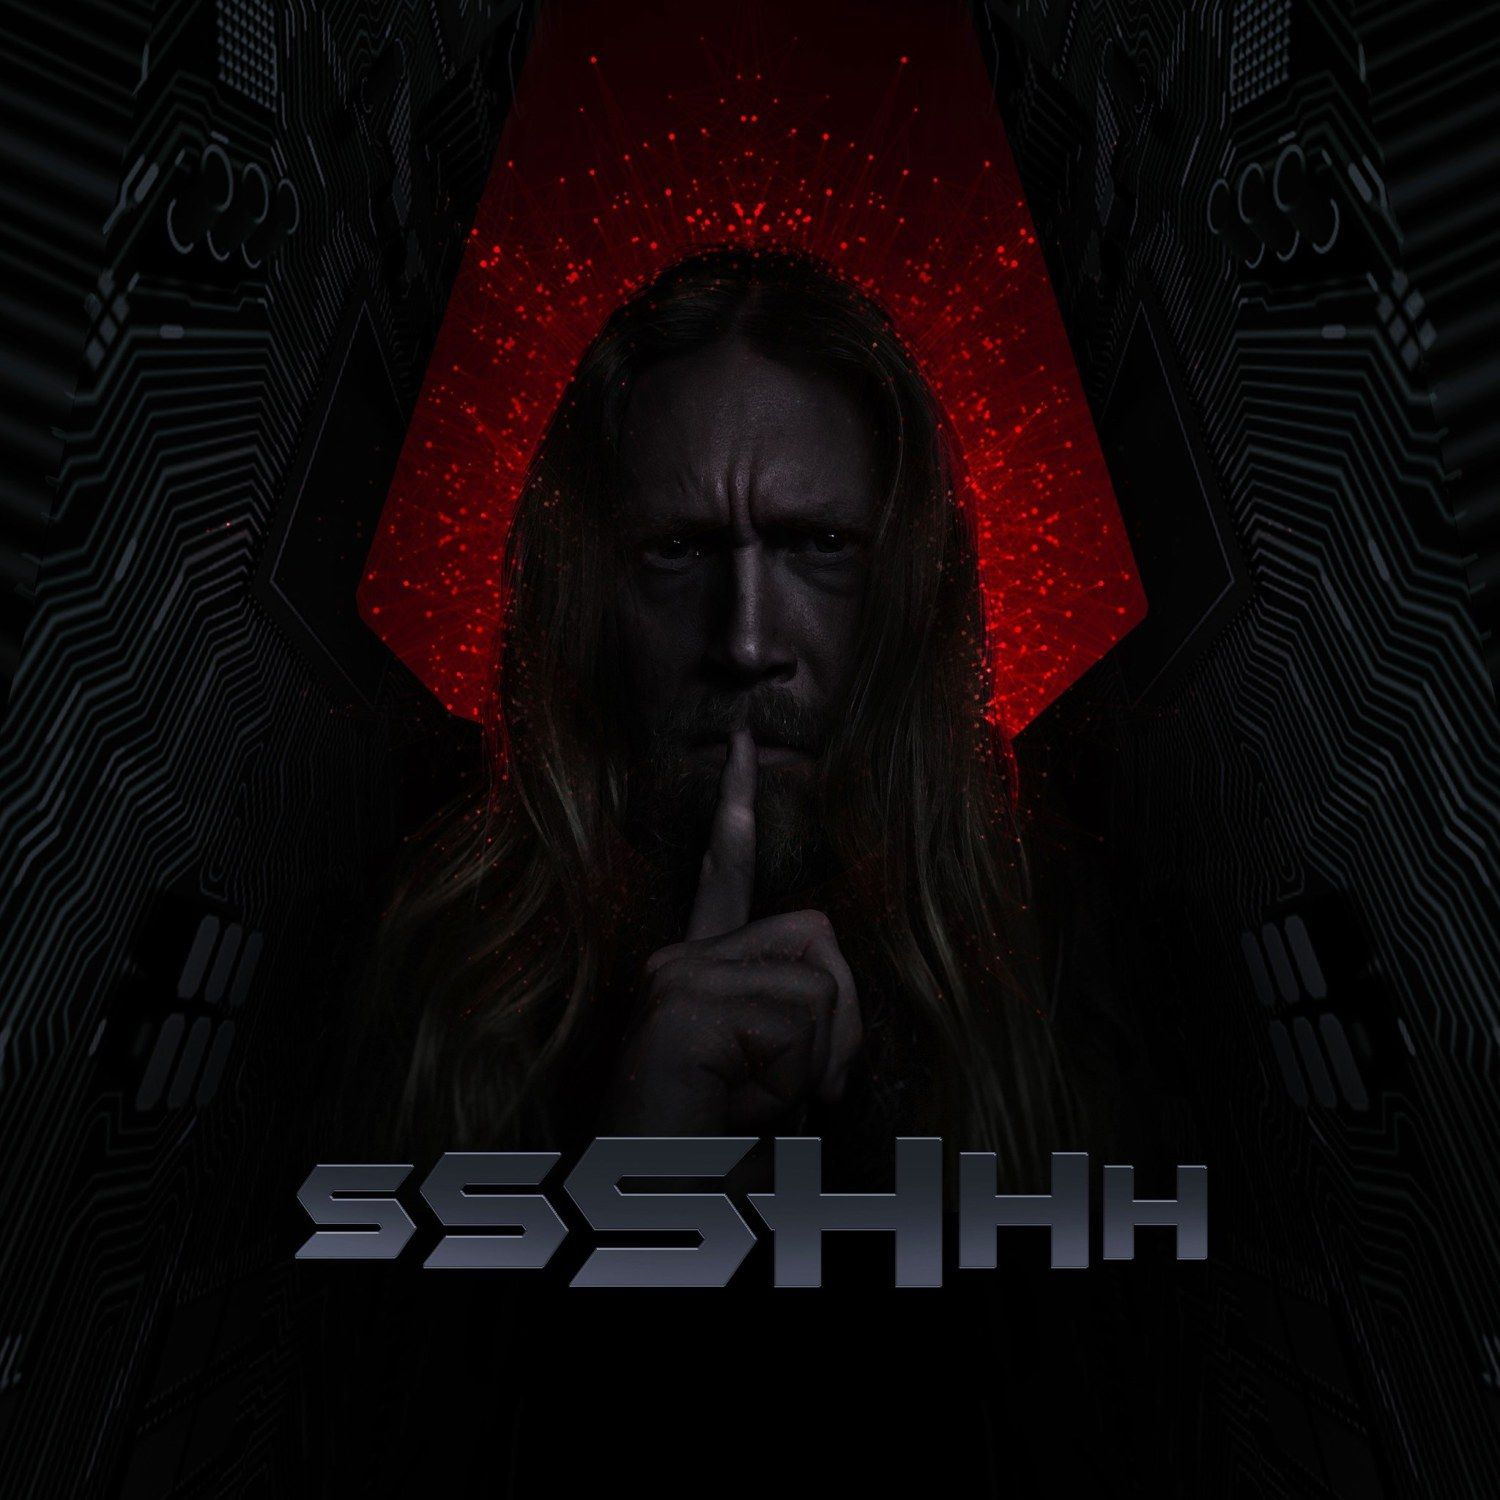 Sami Hinkka veröffentlicht Industrial Metal-Version von 'Jingle Bells' mit ssSHhh